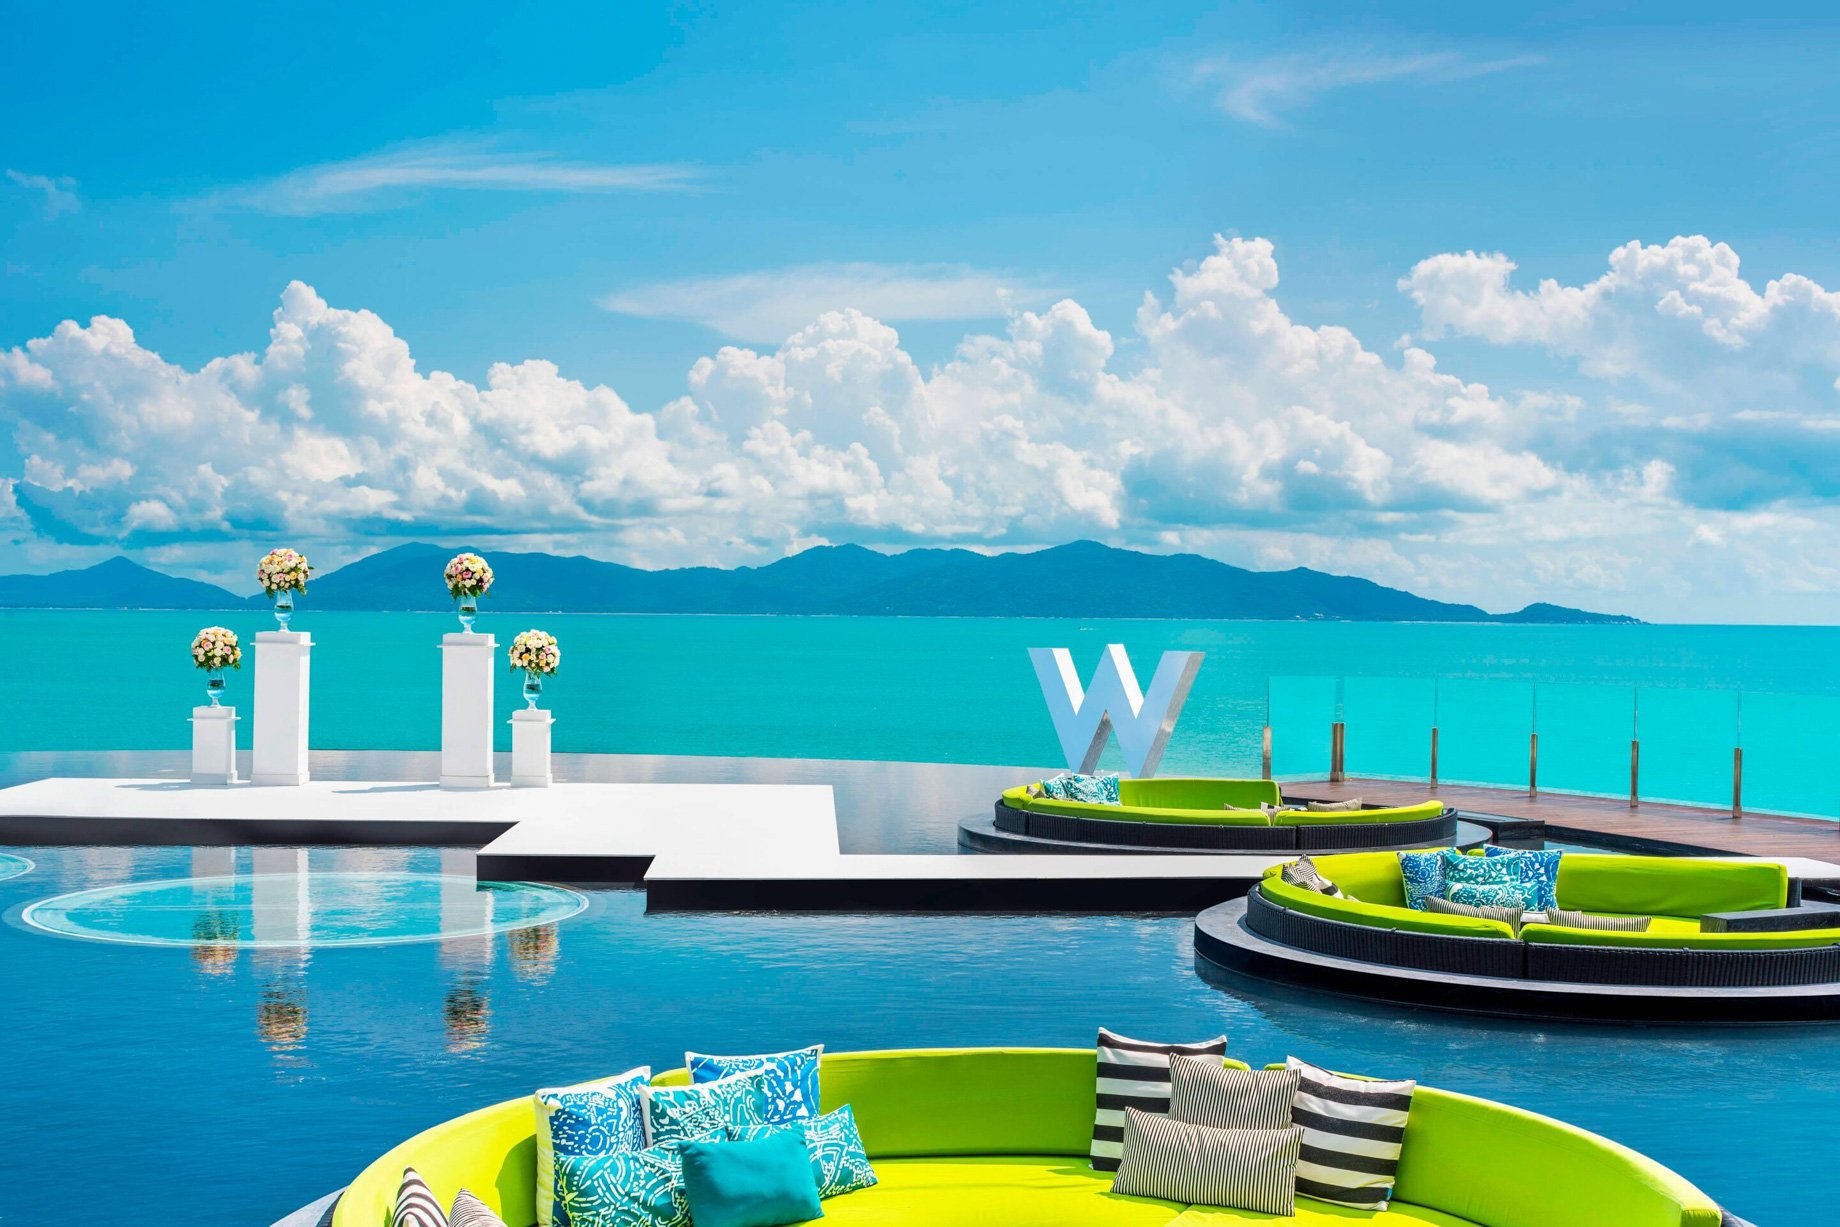 W Koh Samui Resort - Thailand - Pool Deck Wedding at WOOBAR